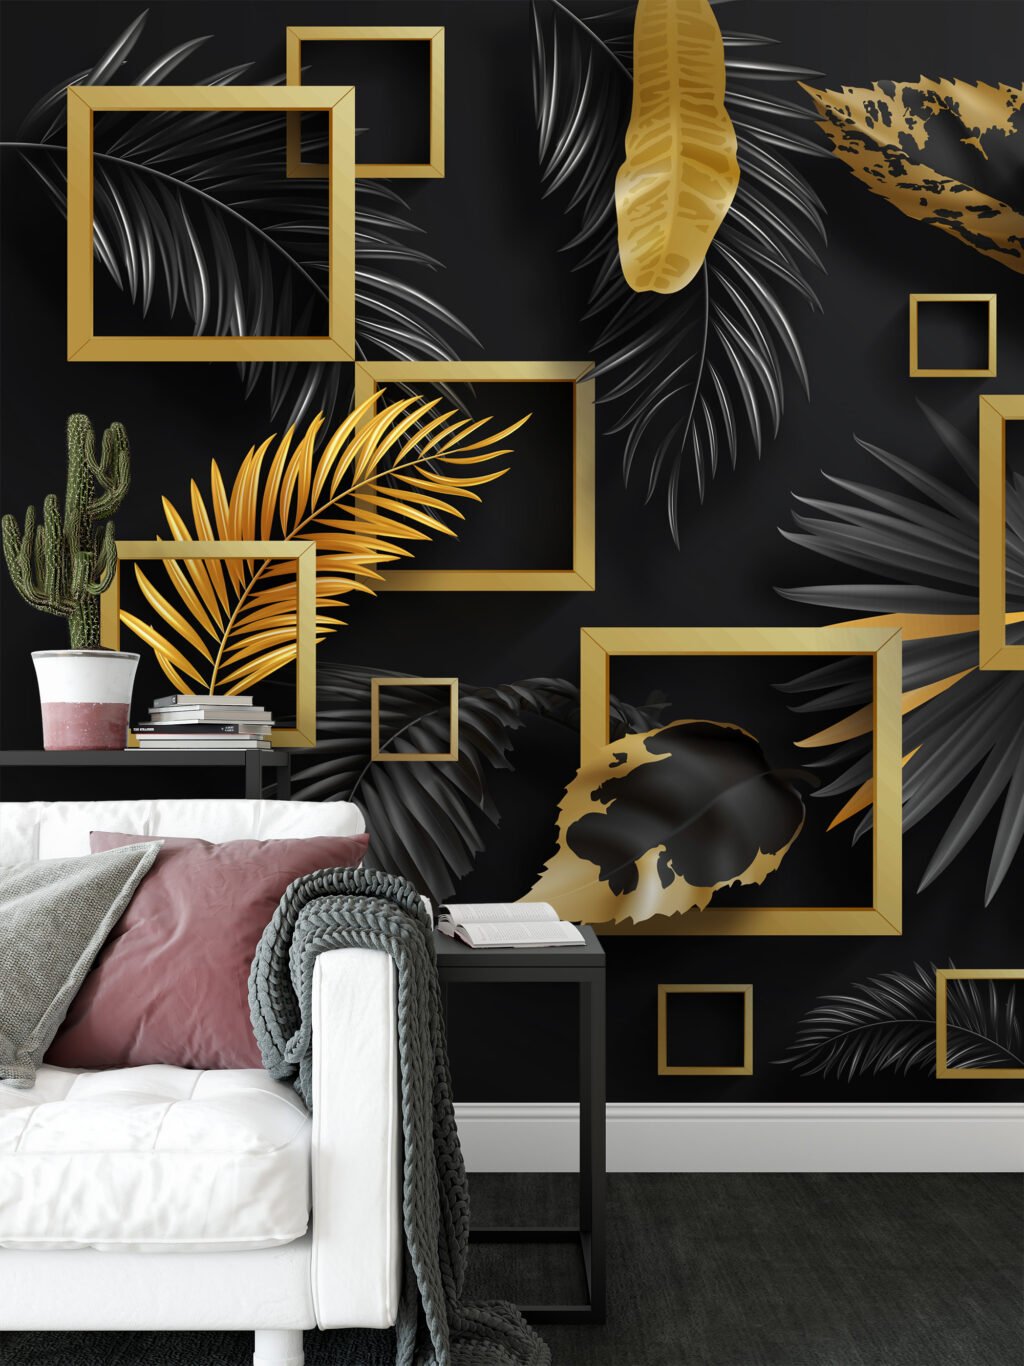 Geometrik Siyah ve Altın Yaprak Desenli Duvar Kağıdı, Modern Ev Dekoru için Zarif Duvar Posteri, 3D Duvar Kağıdı Geometrik Duvar Kağıtları 4